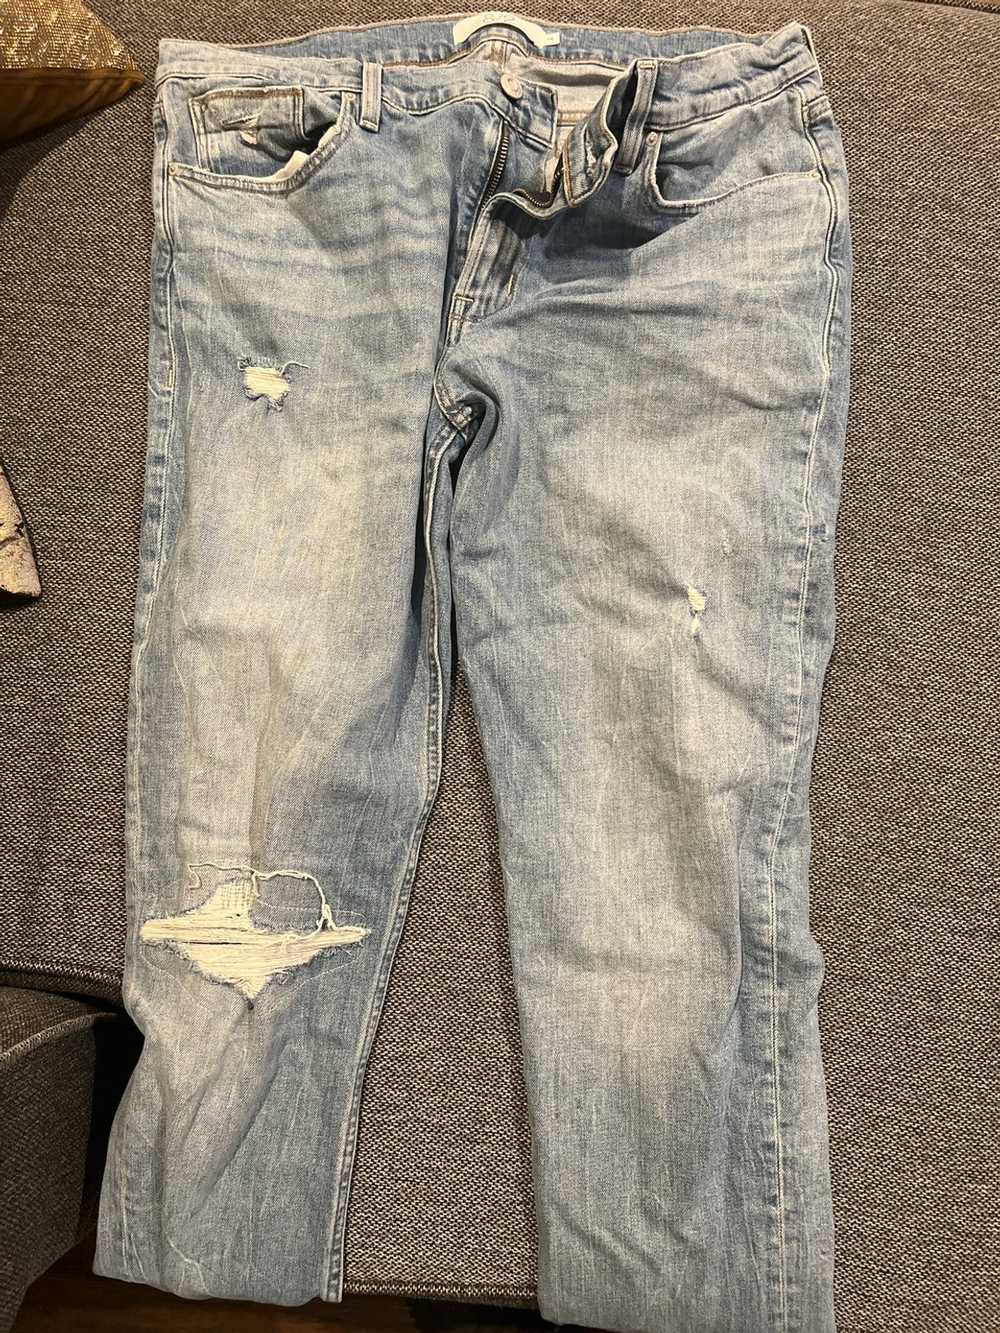 Hudson Hudson jeans size 38 - image 1